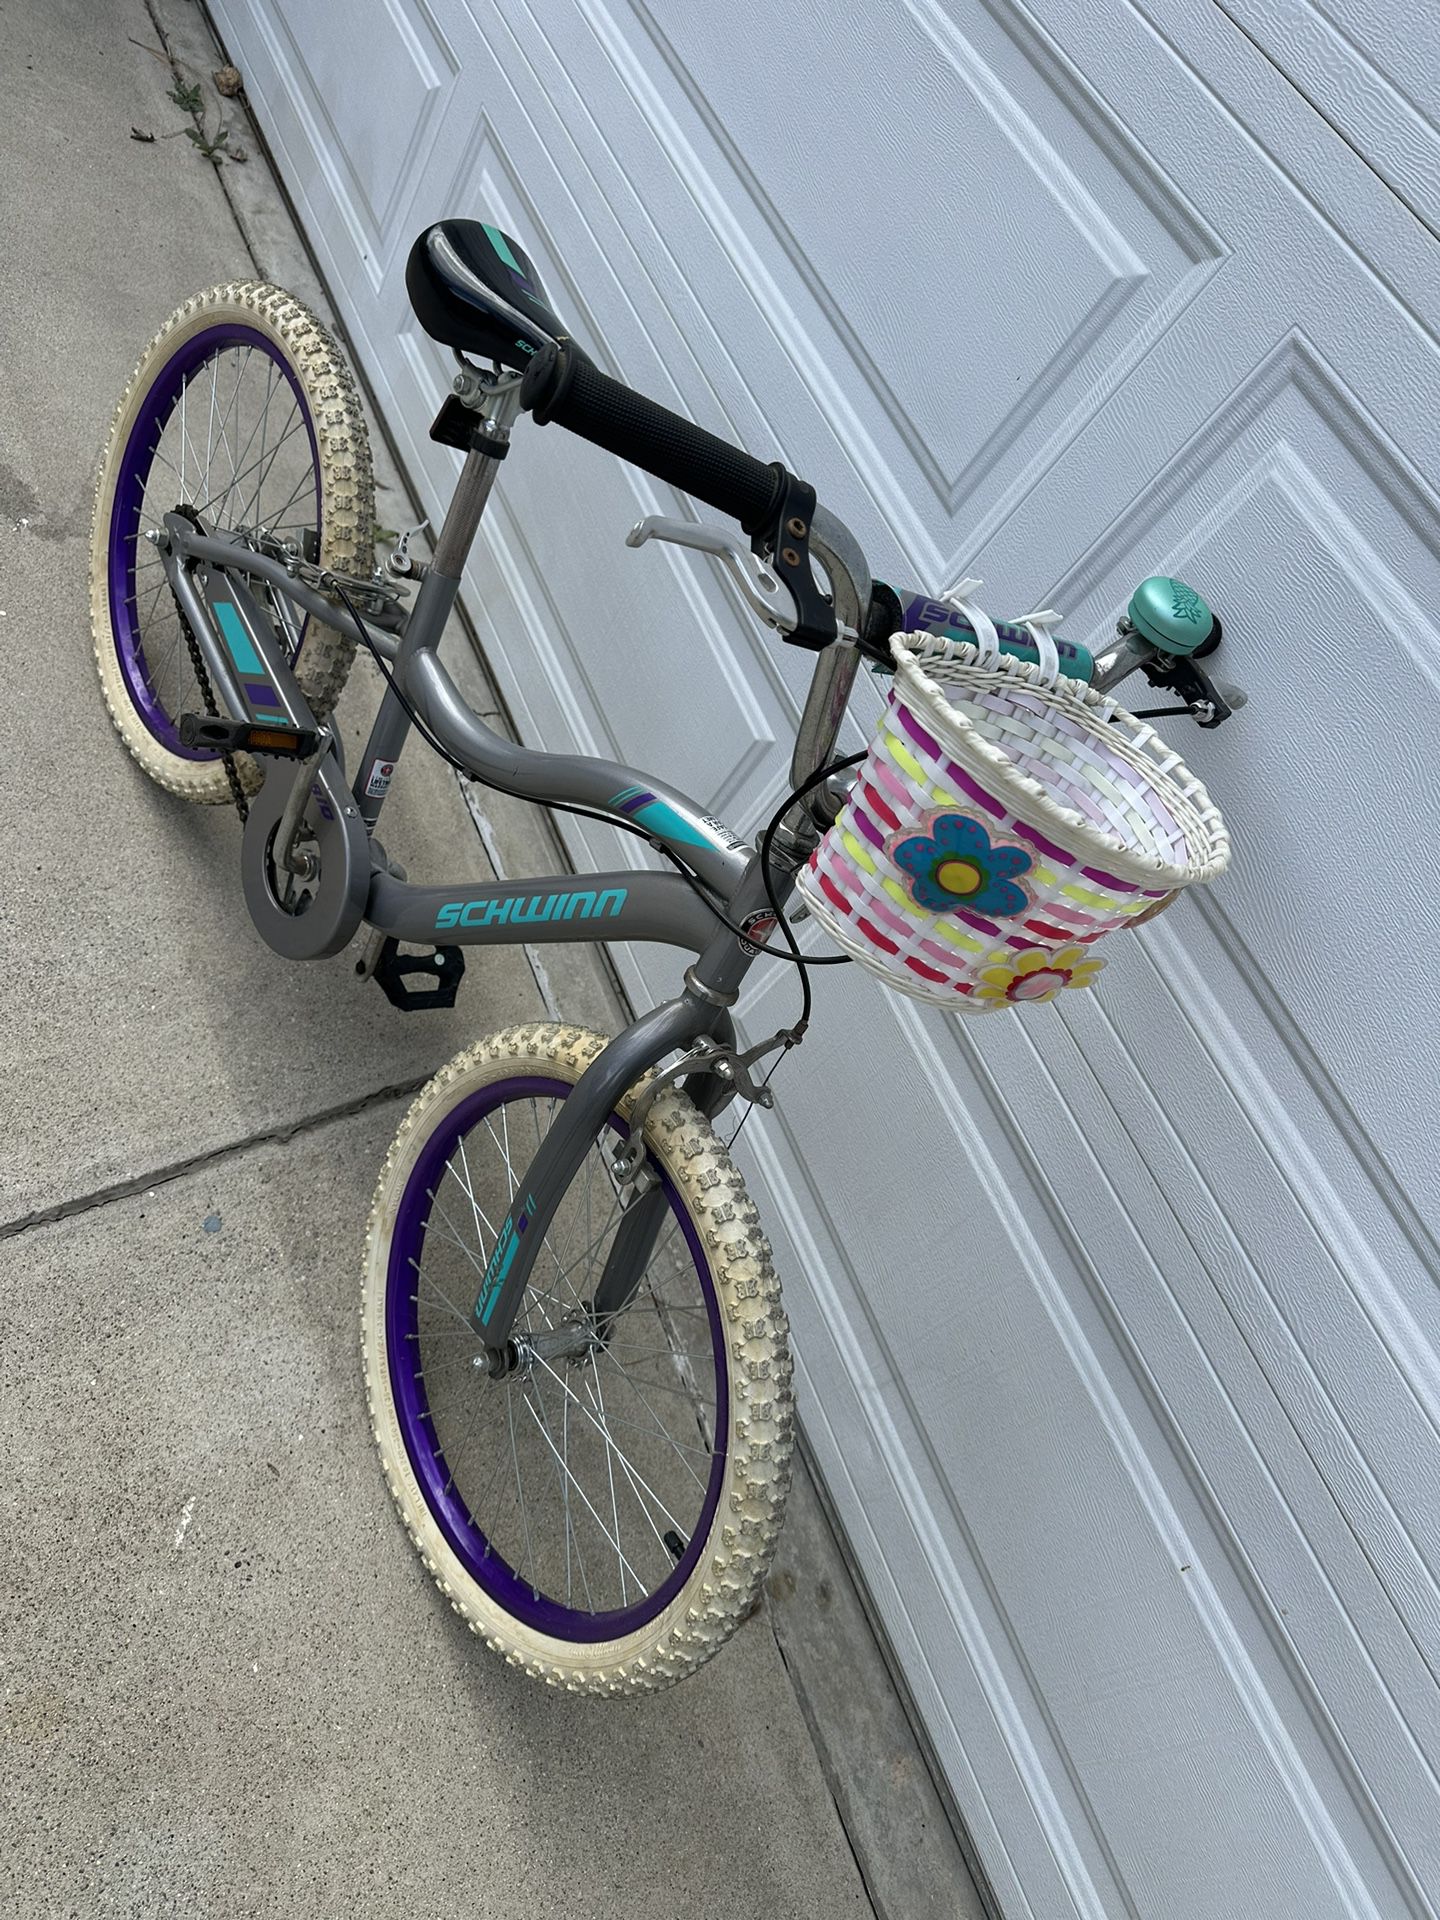 Girls Bike $40